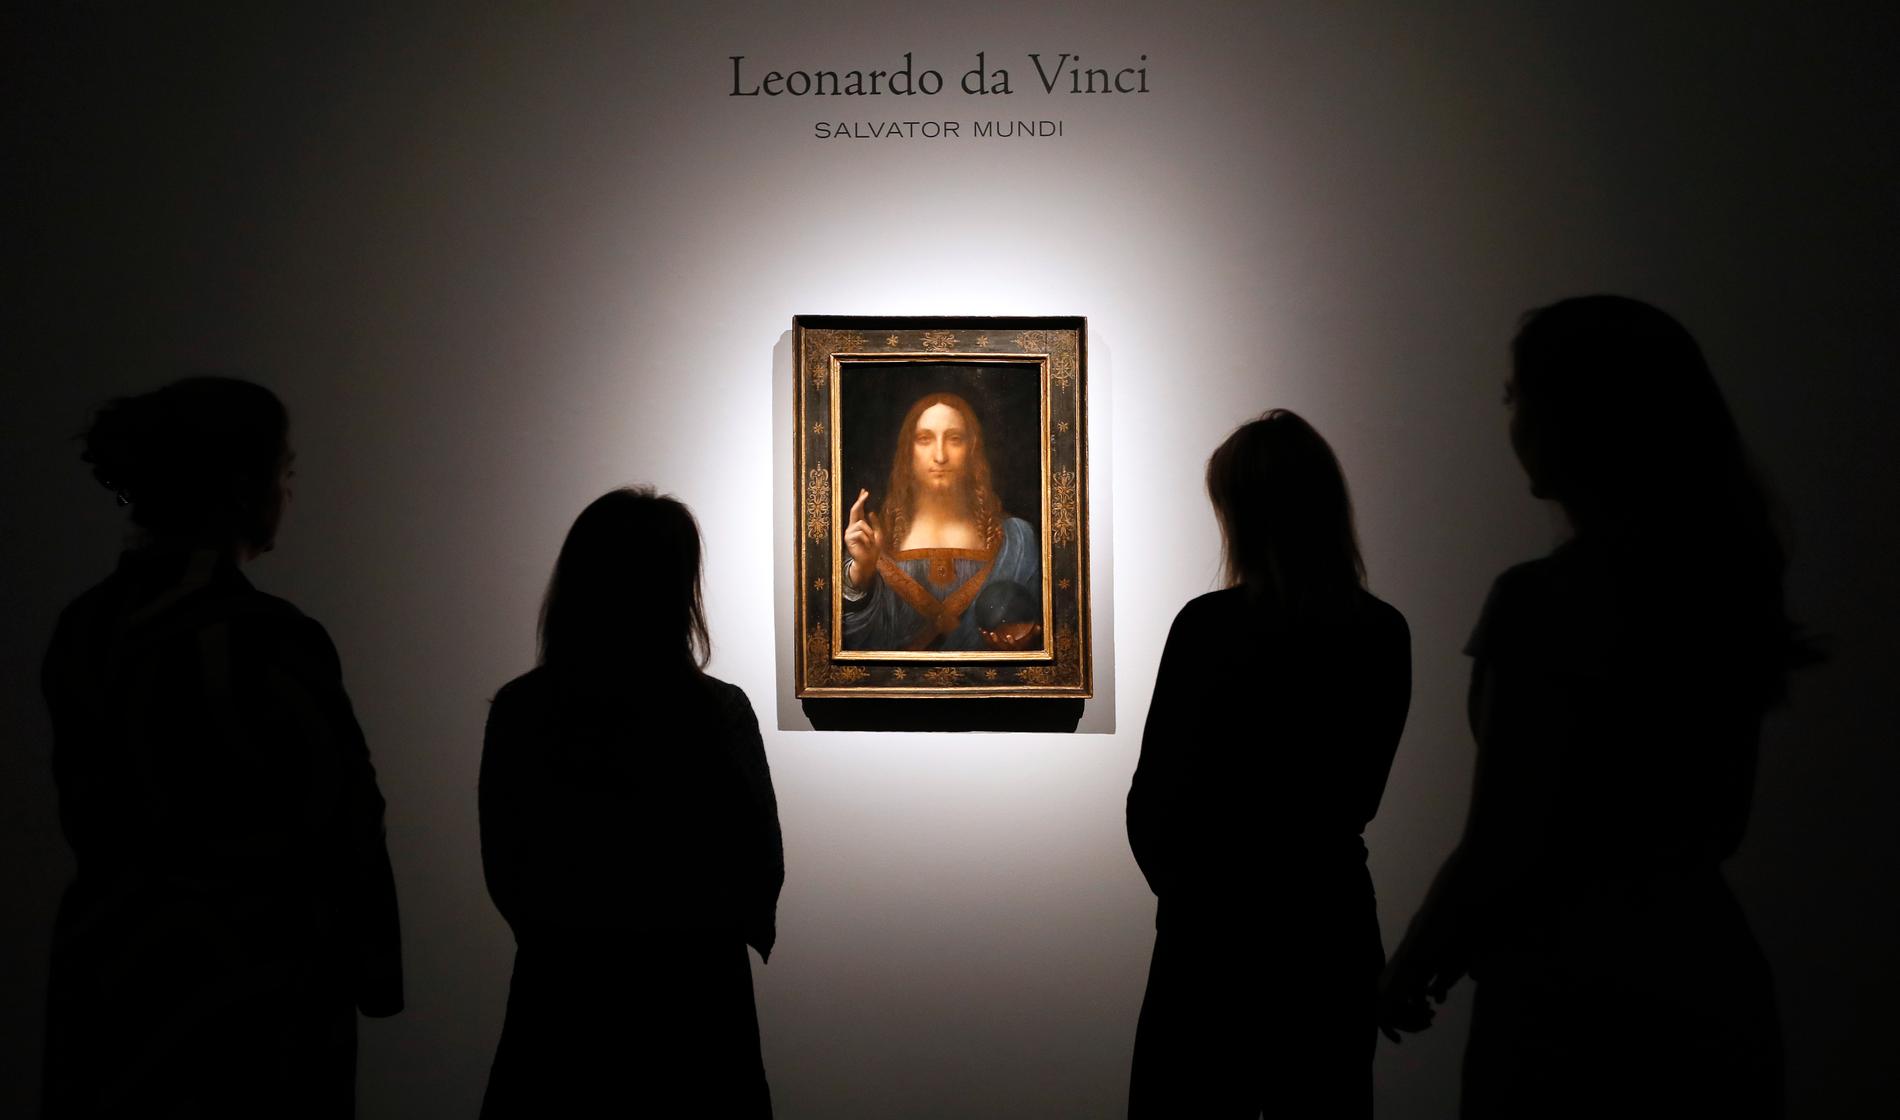 "Salvator mundi", den sista privatägda målningen av Leonardo da Vinci, har sålts på auktion.